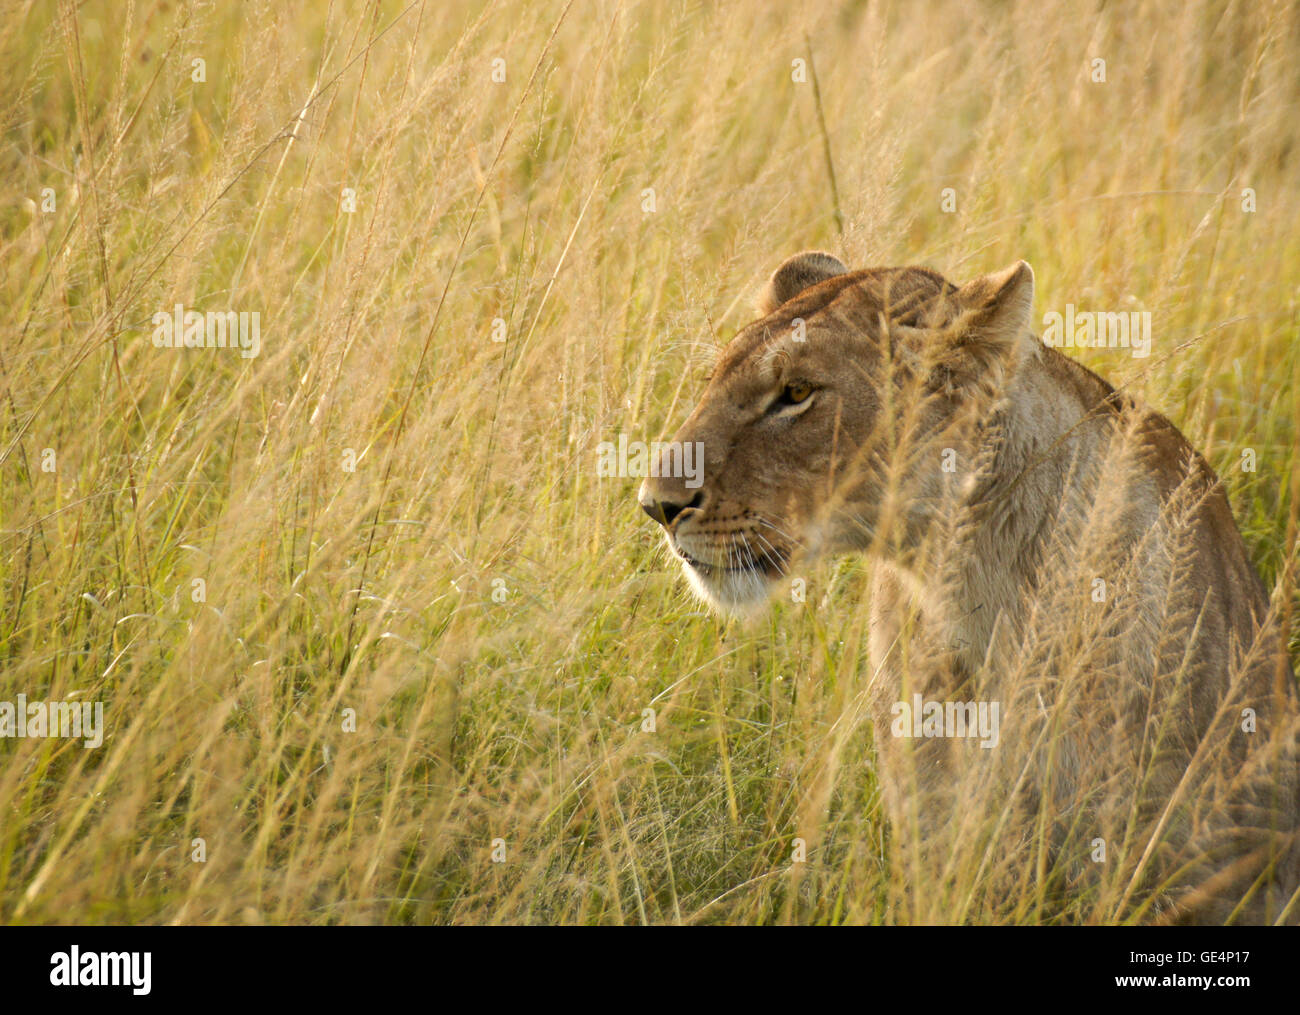 Portrait de femme lion d'Afrique dans la longue herbe, Masai Mara, Kenya Banque D'Images